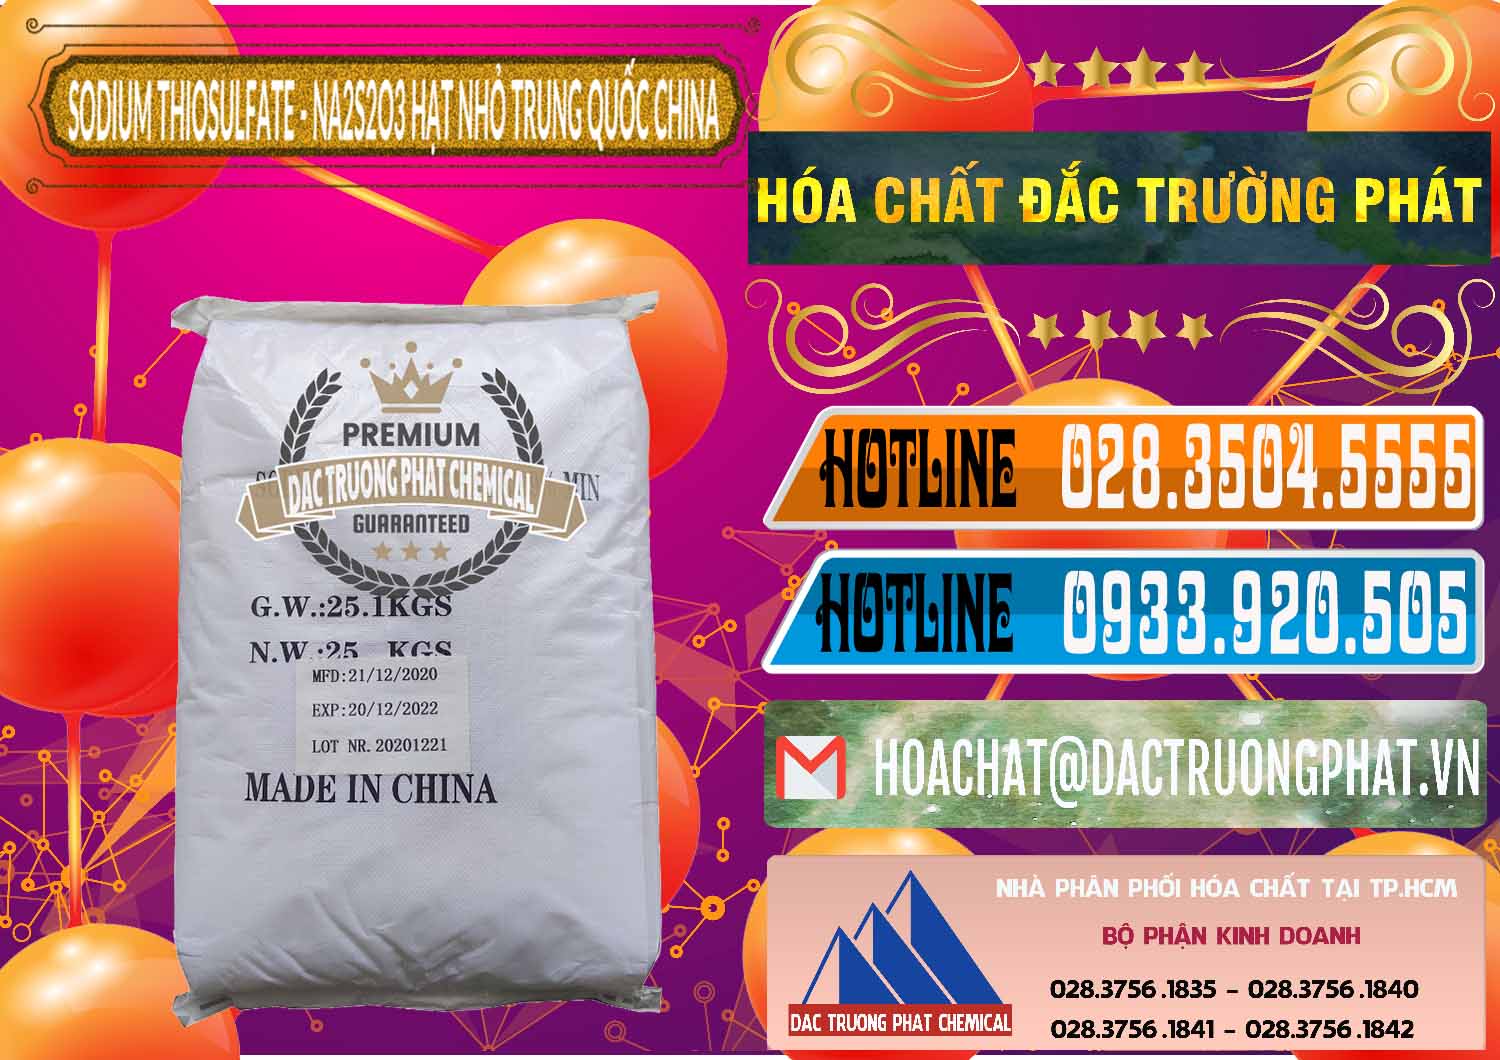 Nơi chuyên bán và phân phối Sodium Thiosulfate - NA2S2O3 Hạt Nhỏ Trung Quốc China - 0204 - Cty phân phối - bán hóa chất tại TP.HCM - stmp.net